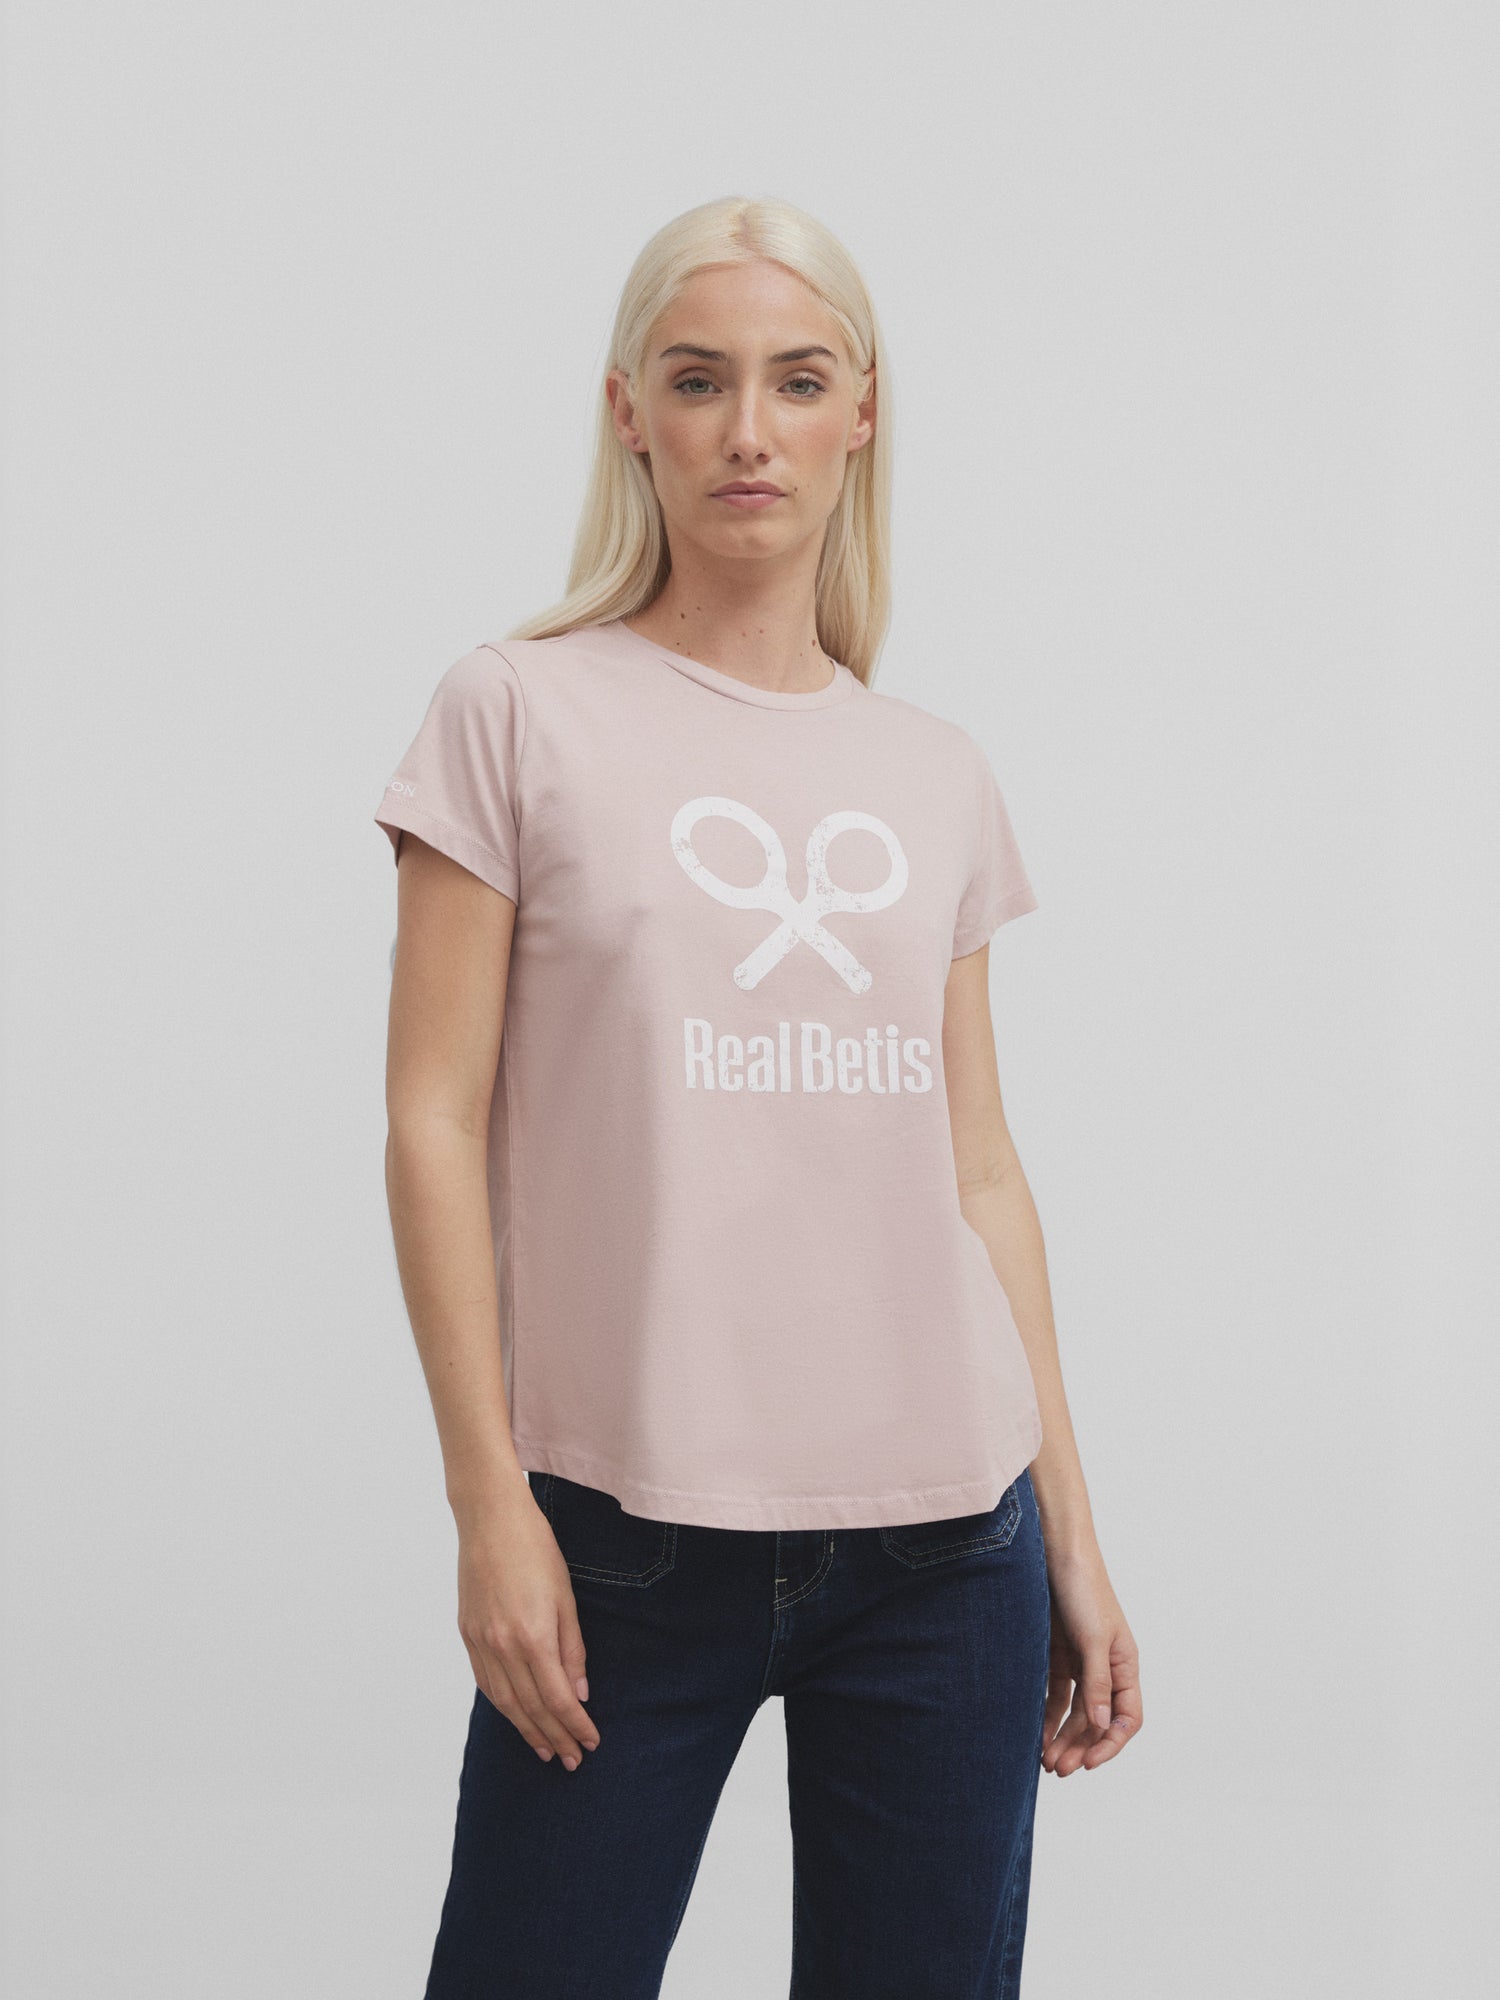 Real Betis pink women's racket t-shirt